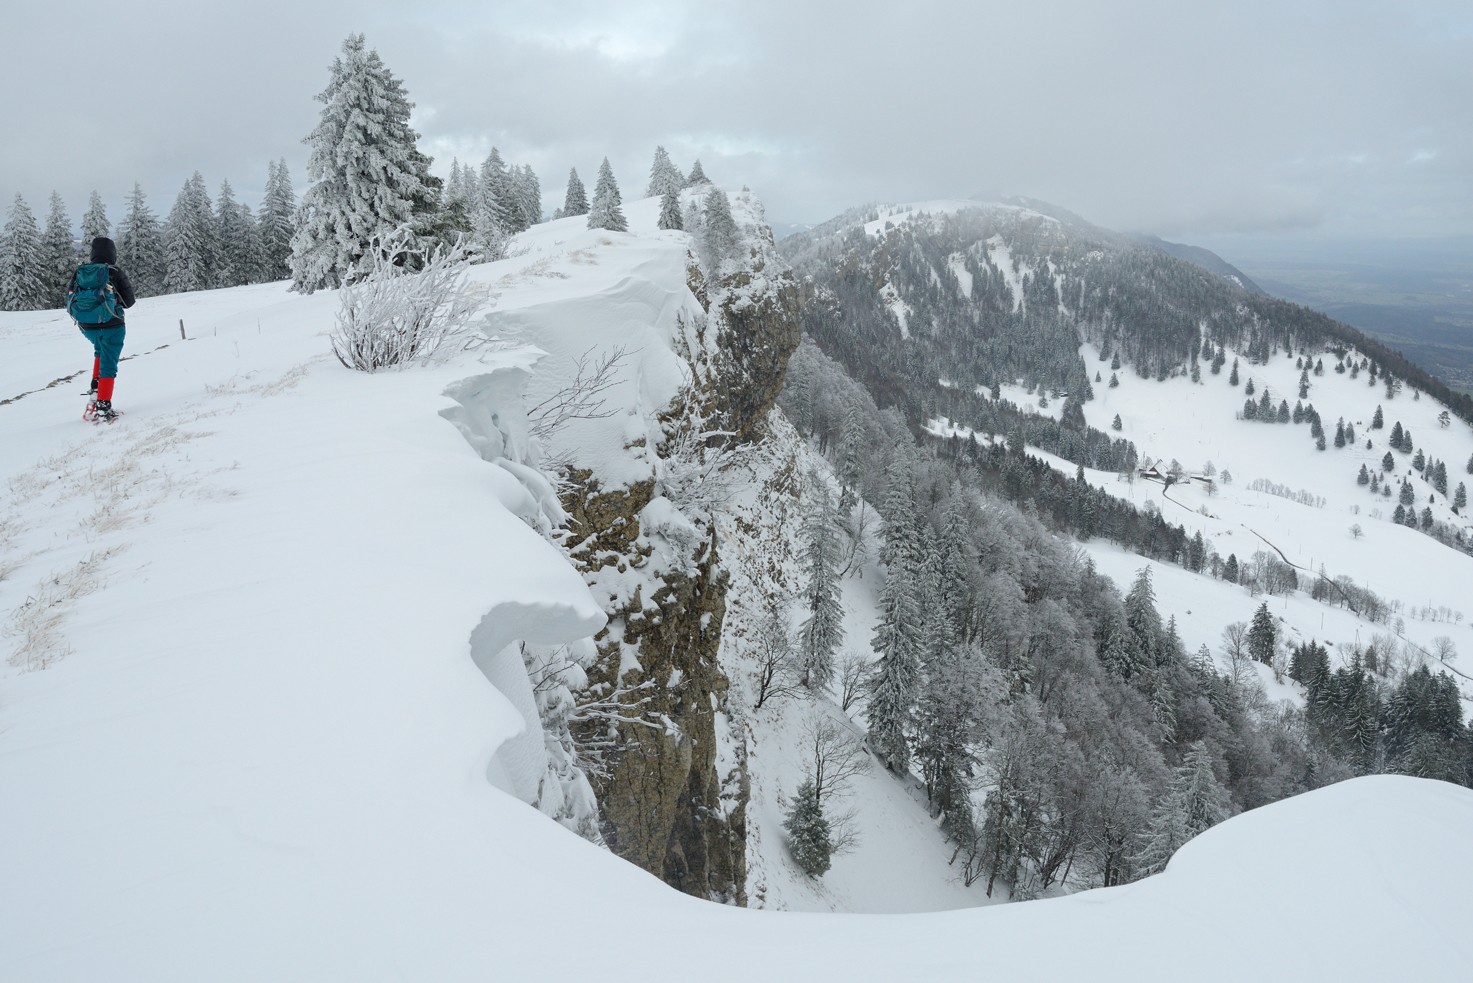 Méfiez-vous du surplomb de neige. Le long du précipice gardez votre distance. Photos: natur-welten.ch